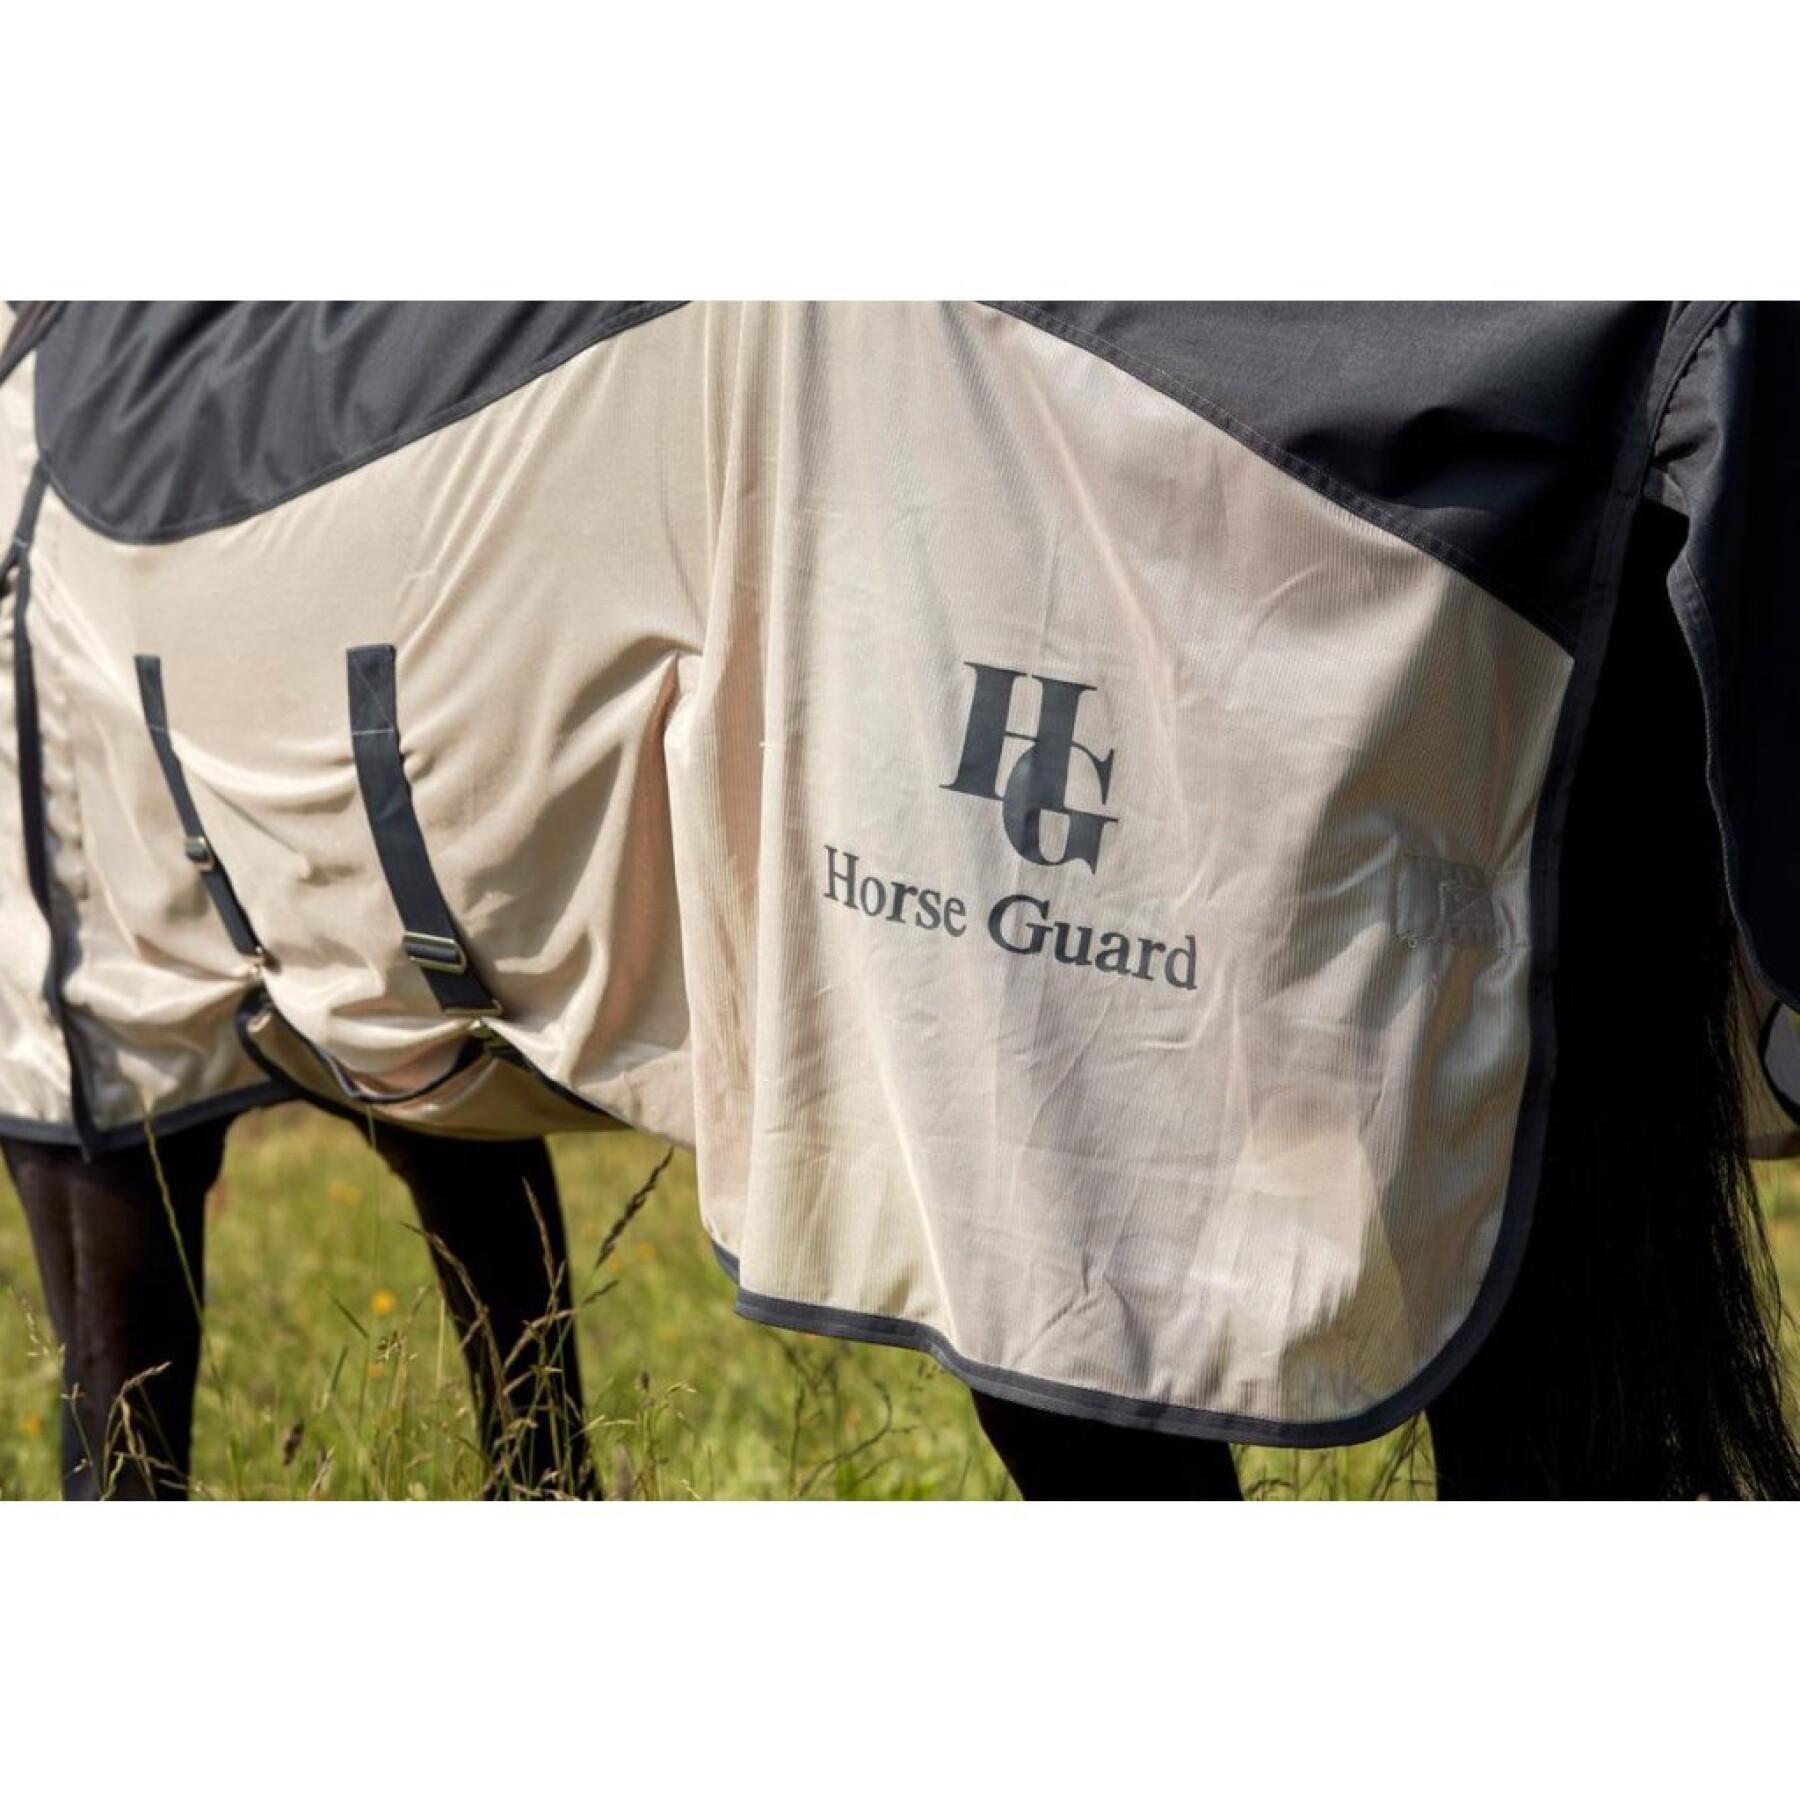 Cobertor para cavalos contra insectos/verão em malha impermeável HorseGuard